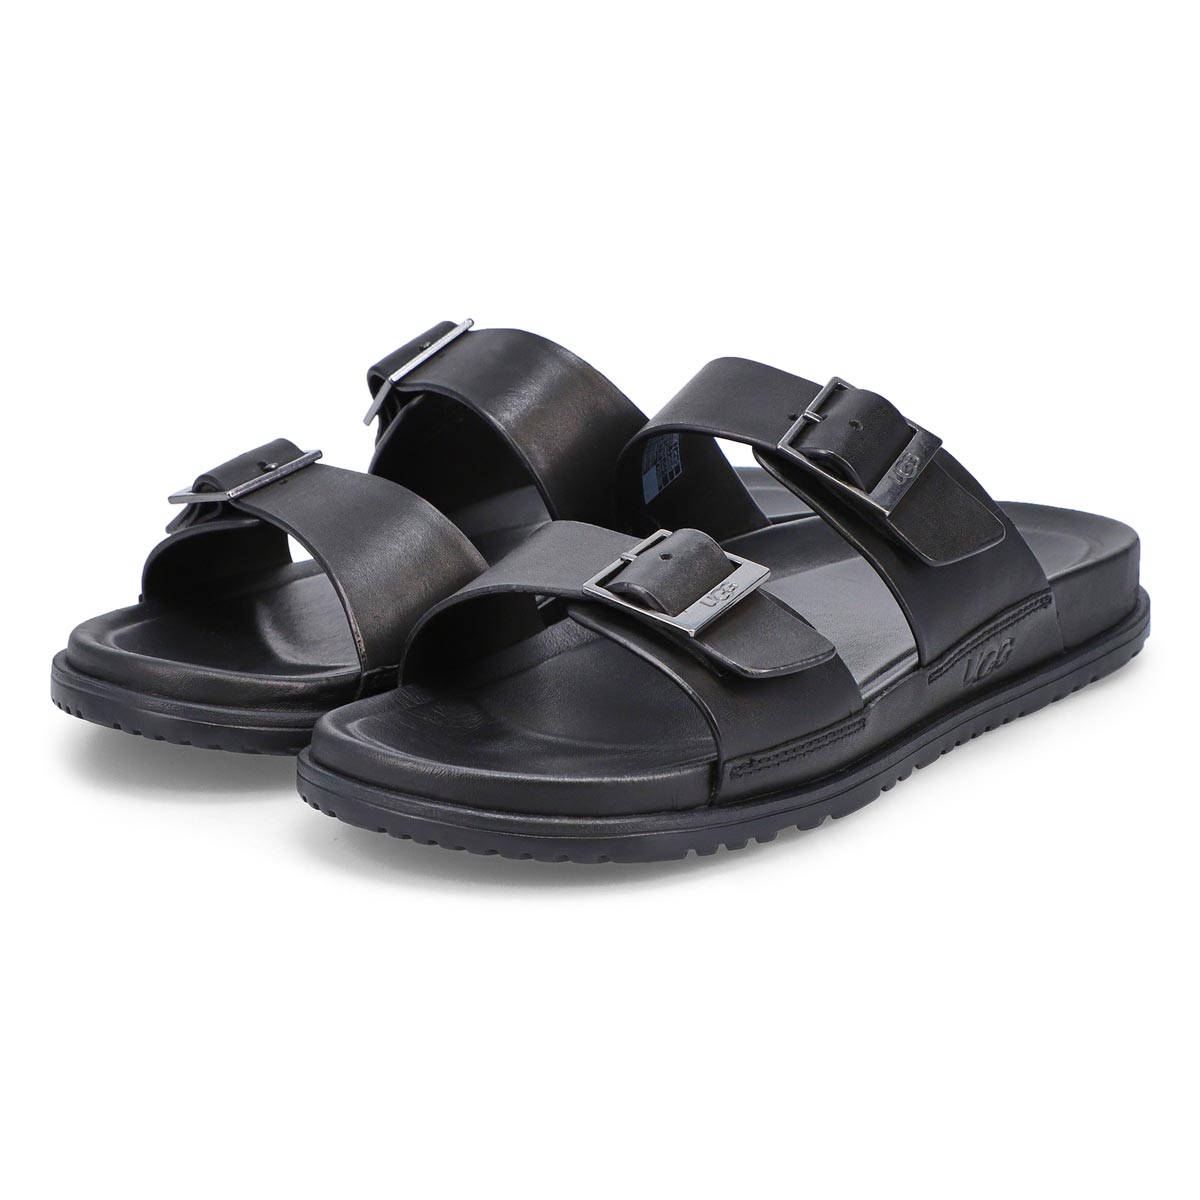 Men's Wainscott Buckle Slide Sandal - Black